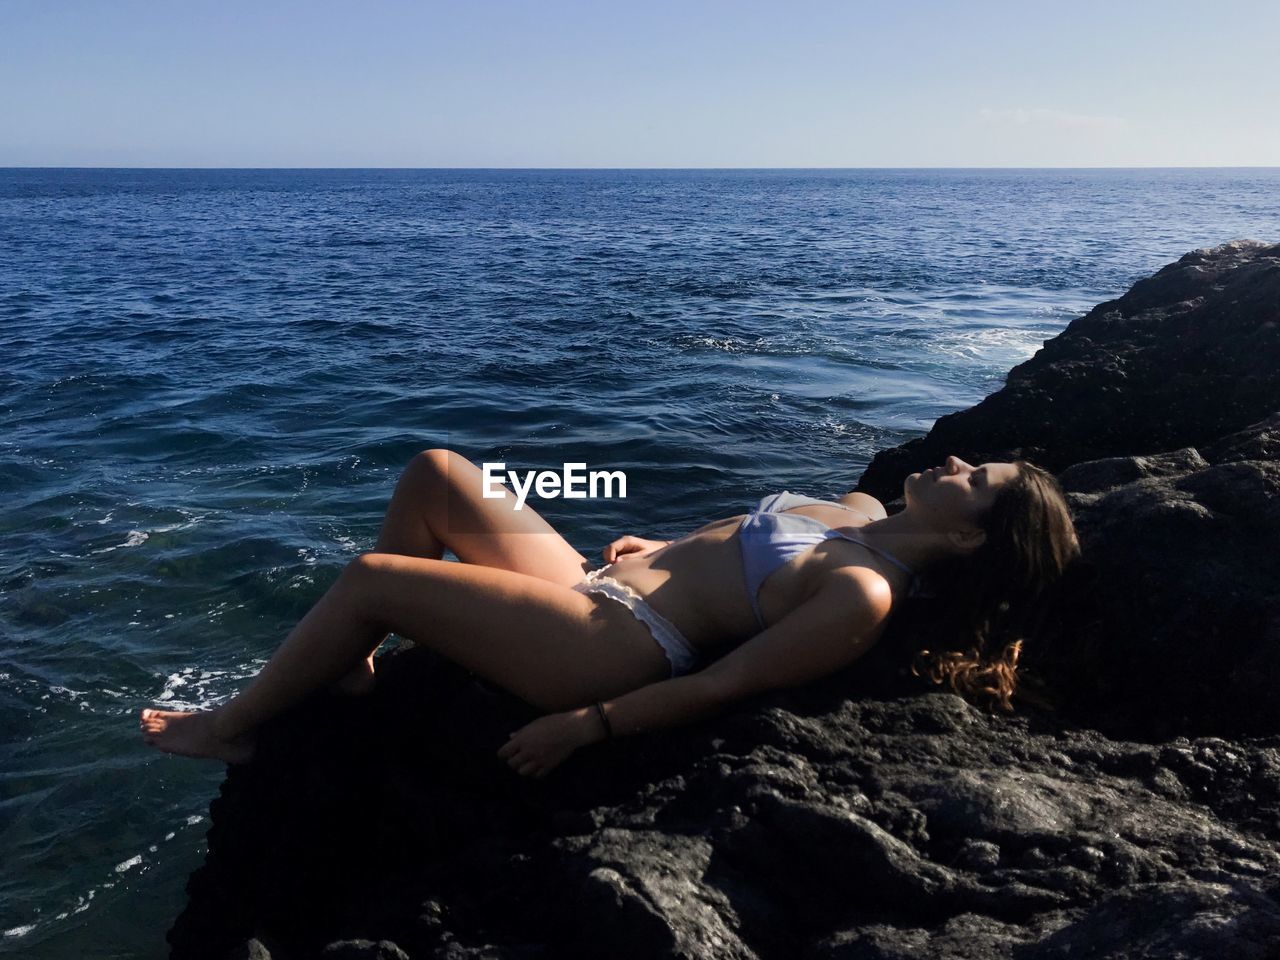 Woman in bikini relaxing on rock by sea against sky